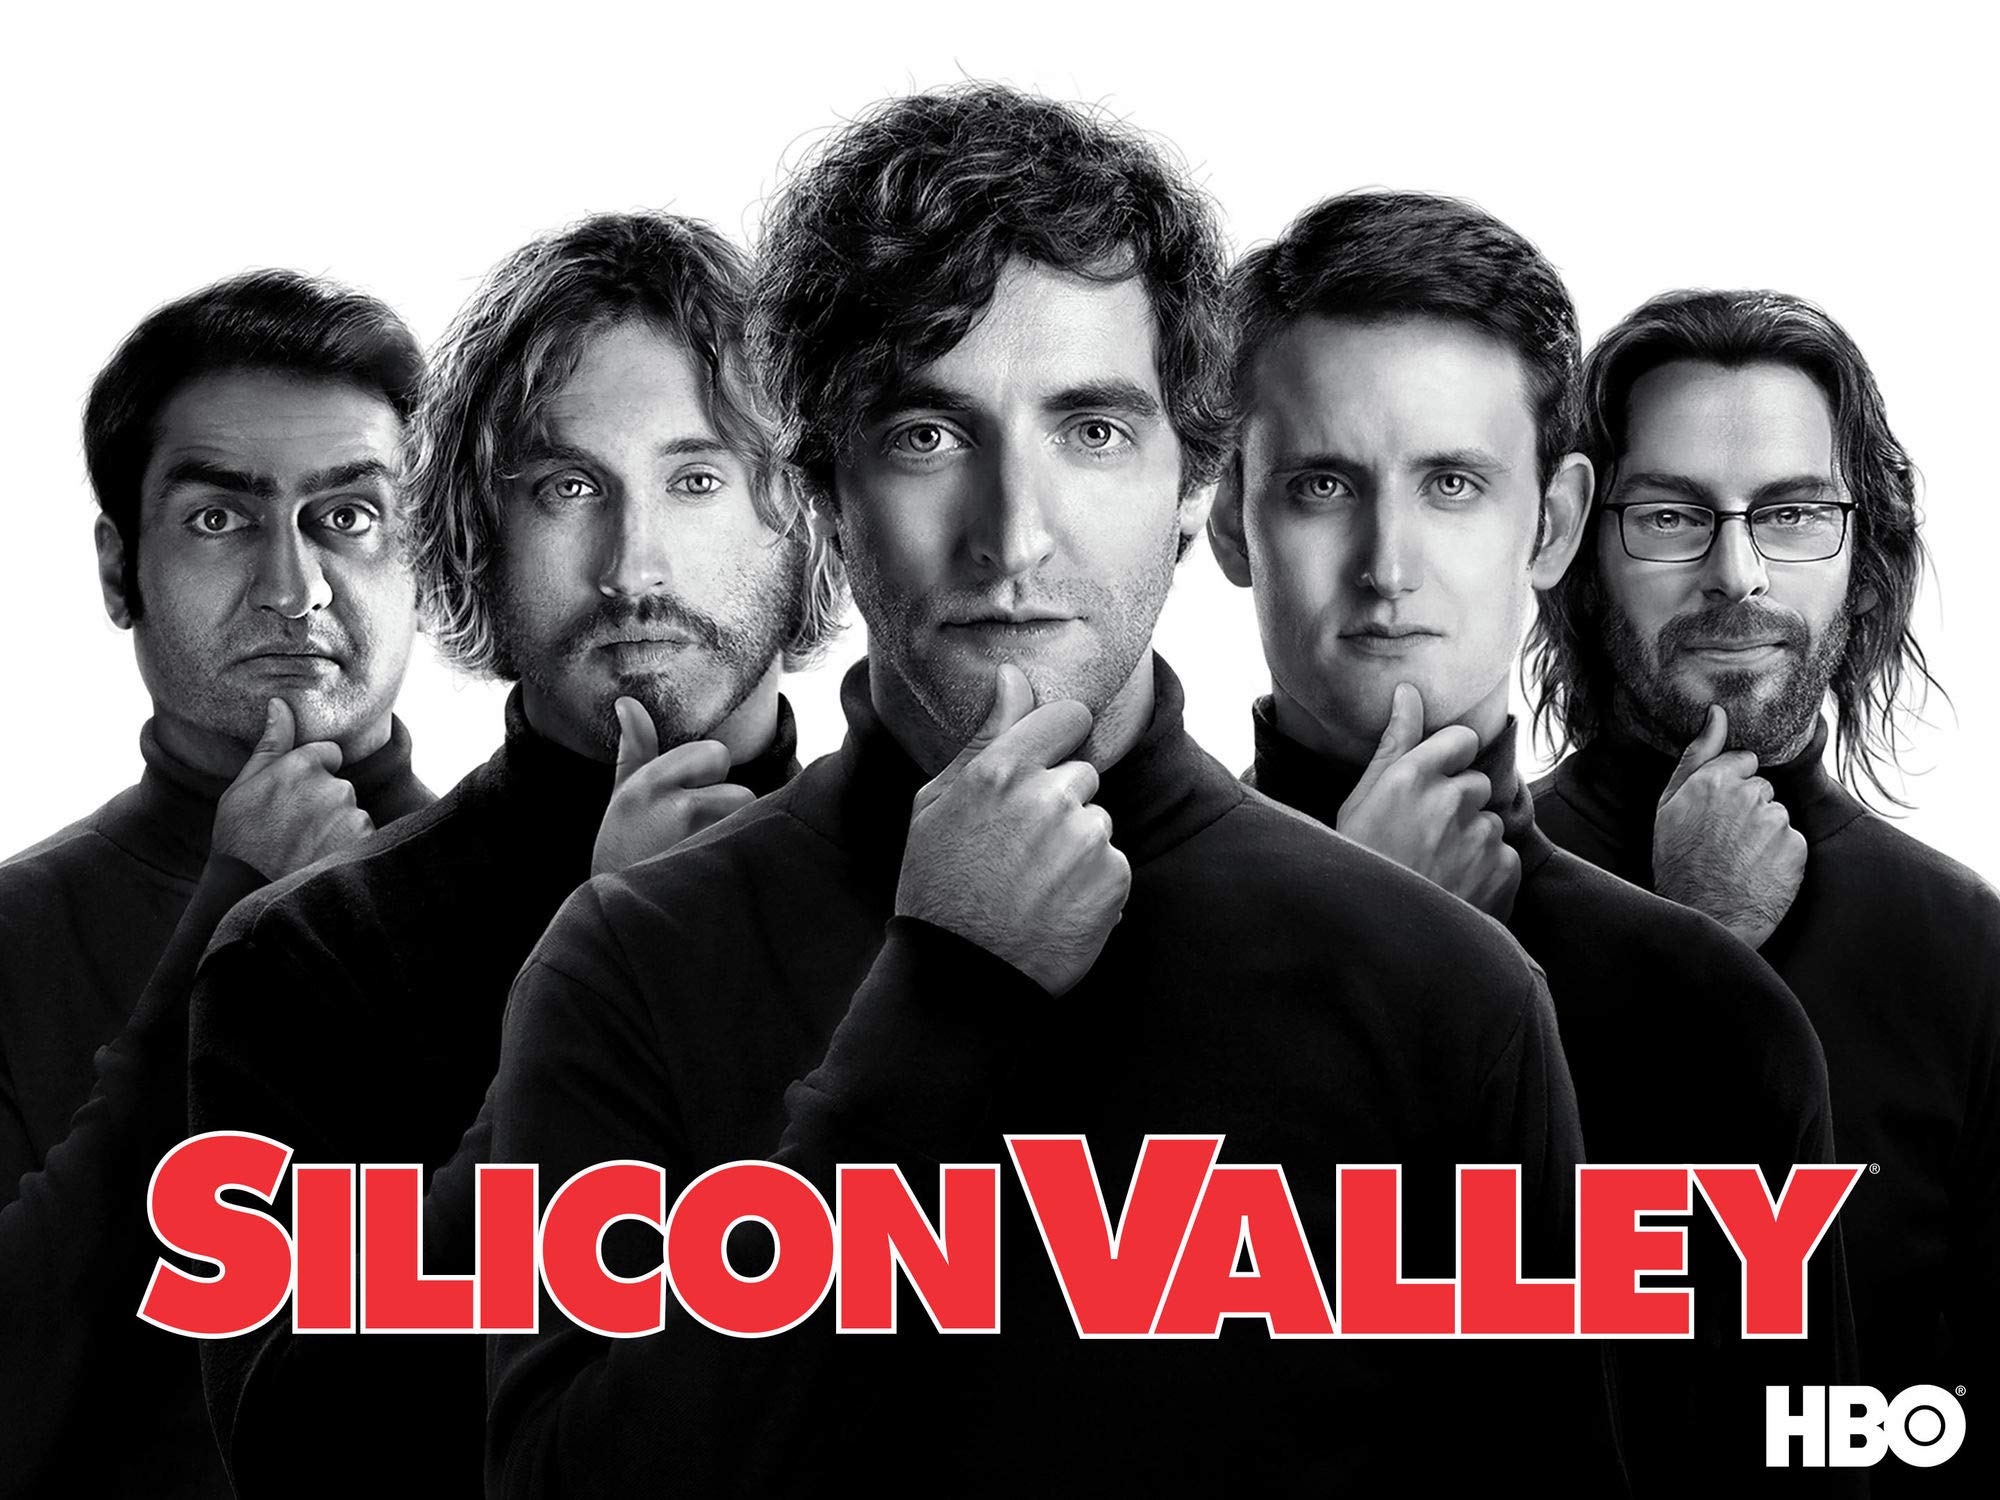  Silicon Valley è una serie televisiva statunitense creata da Mike Judge, John Altschuler e Dave Krinsky. La serie è stata trasmessa dal 2014 al 2019 e segue le vicende di un gruppo di giovani imprenditori che cercano di lanciare una startup di successo nella Silicon Valley, in California. La serie è stata acclamata dalla critica per il suo umorismo intelligente e la sua rappresentazione 